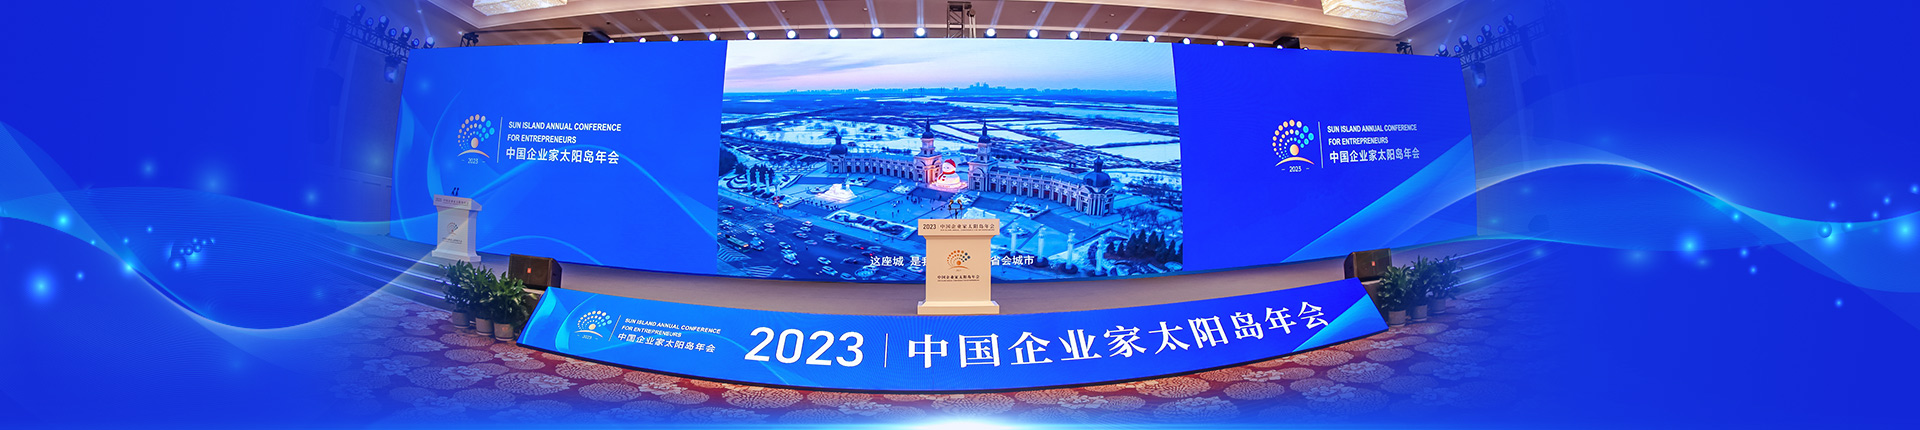 2023中国企业家太阳岛年会在哈尔滨开幕